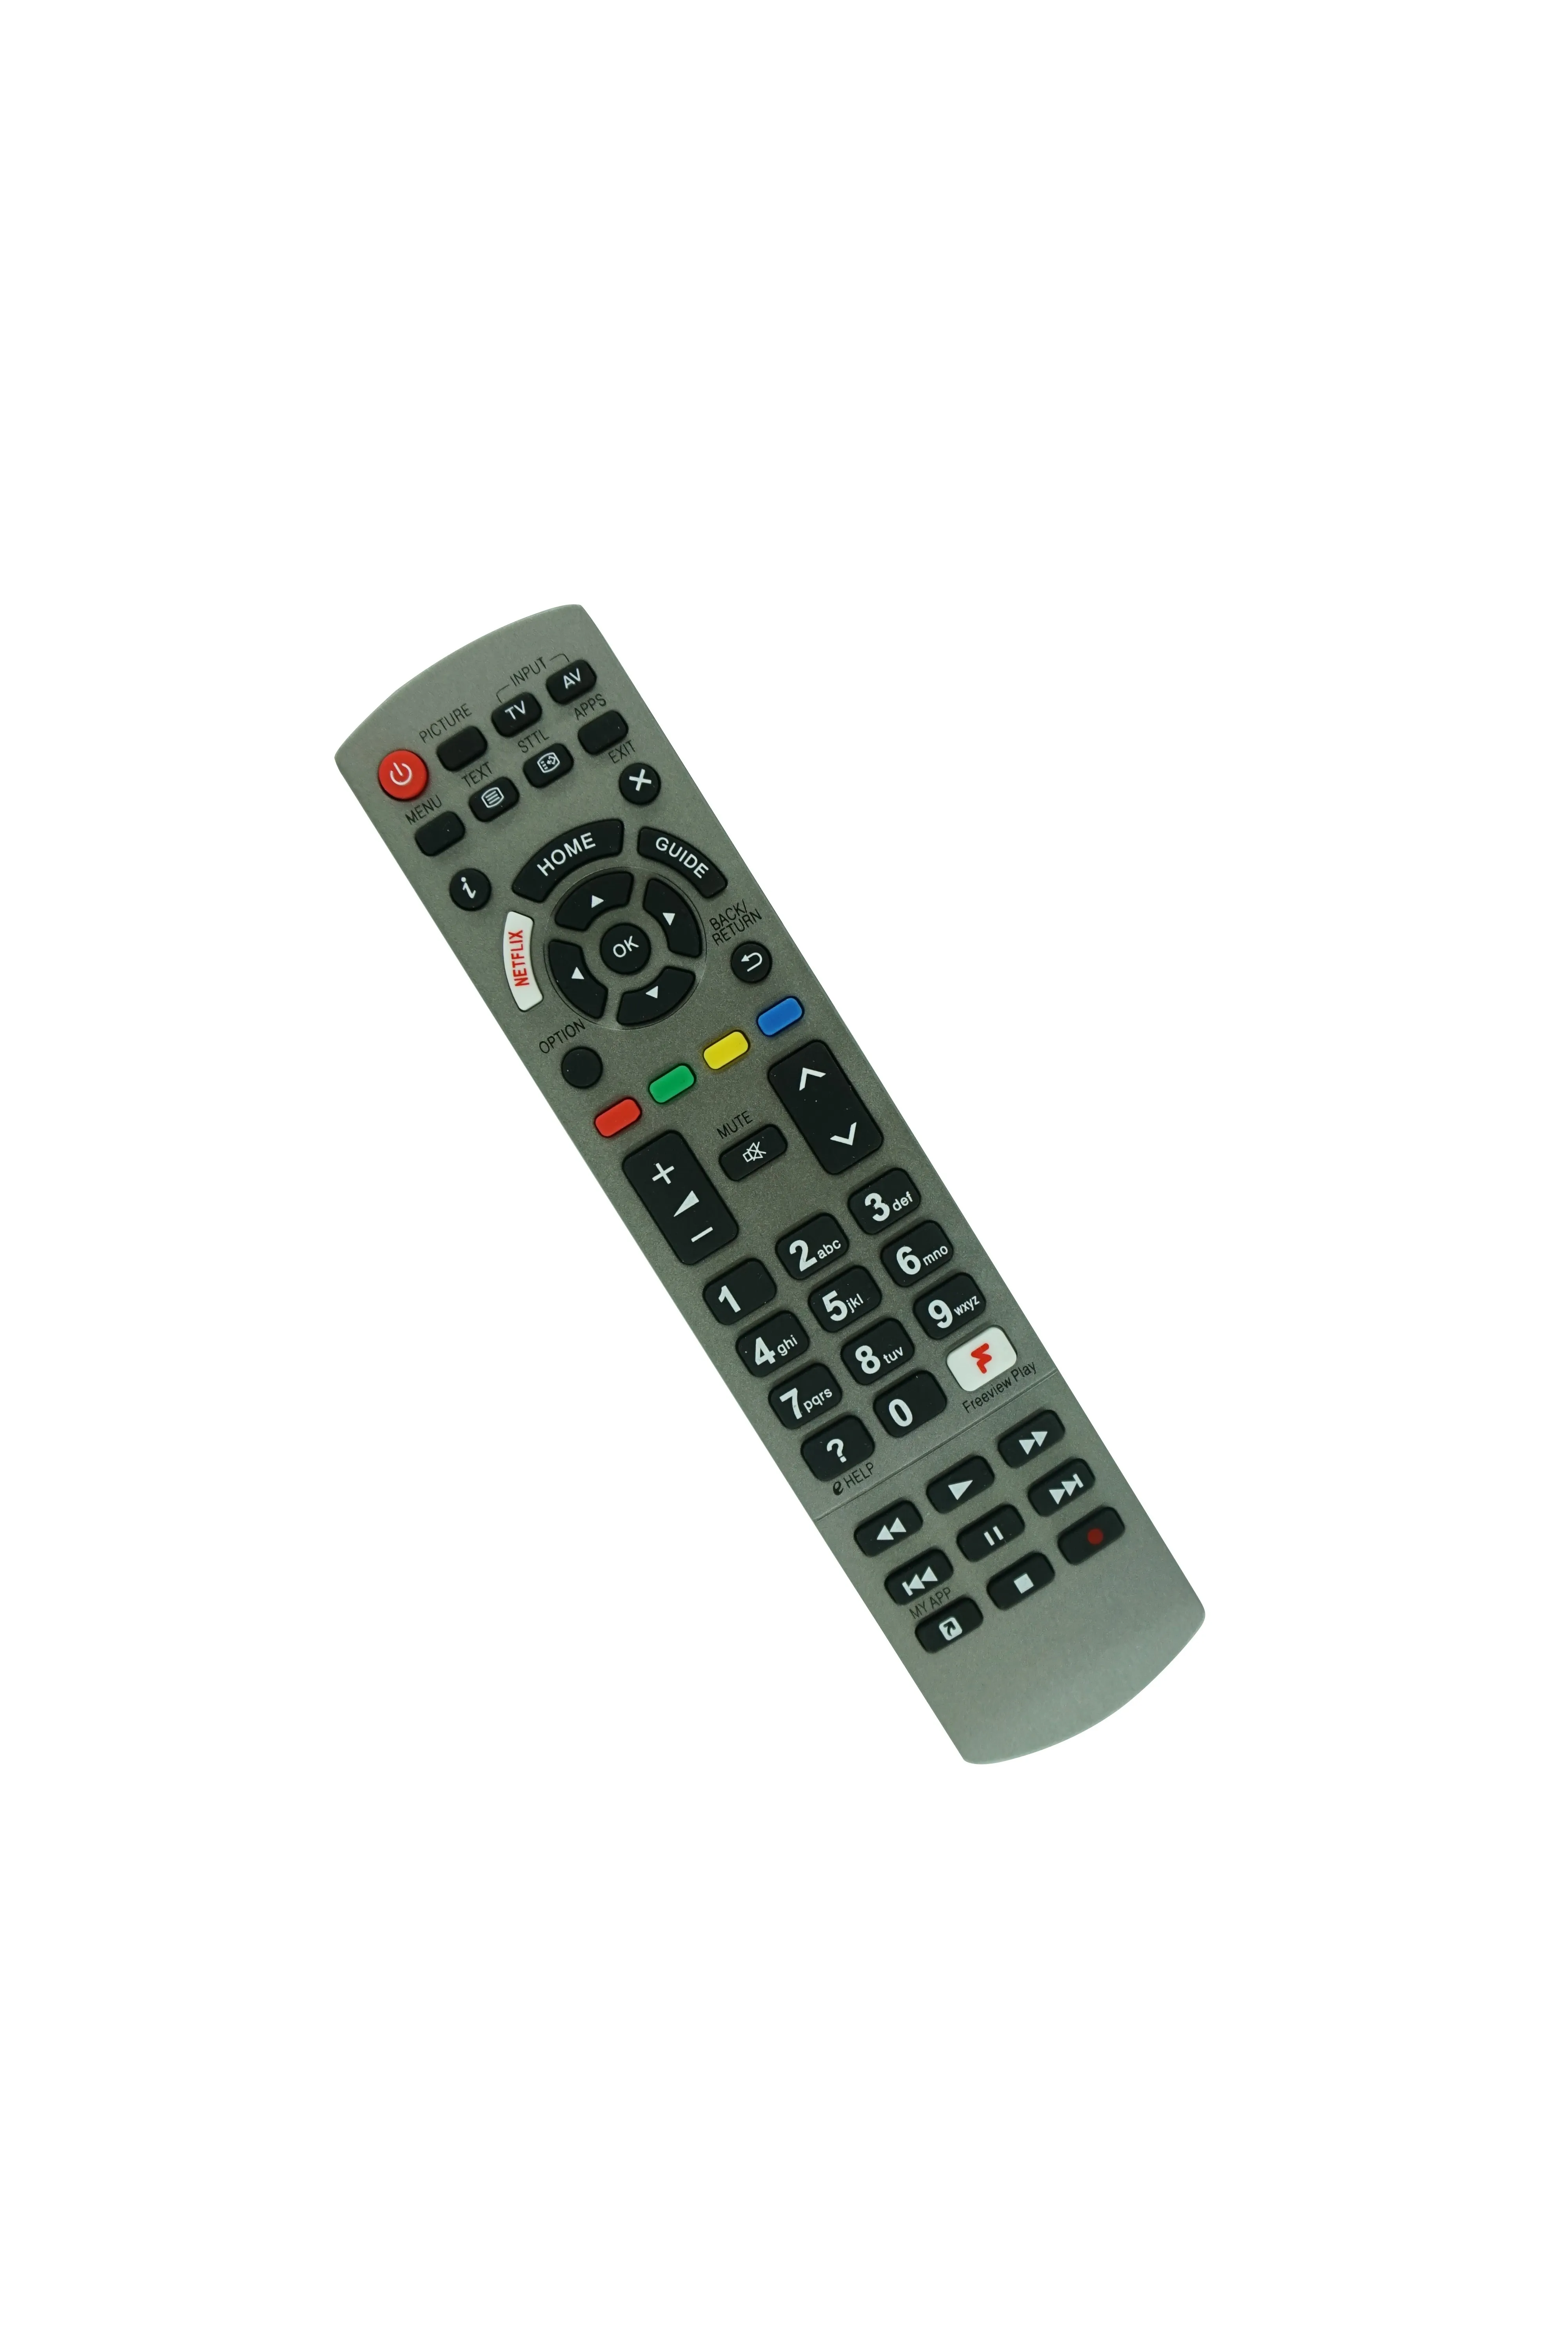 Remoto Control per Panasonic TX-75FX750B TX-49FX700E TX-49FX700B TX-55FX700E TX-55FX700B TX-65FX700E TX-65F700B TX-43FX650B TX-49FX650B SEMT UHD 4K TV 4K TV 4K TV 4K TV 4K TV 4K TV 4K TV 4k TV